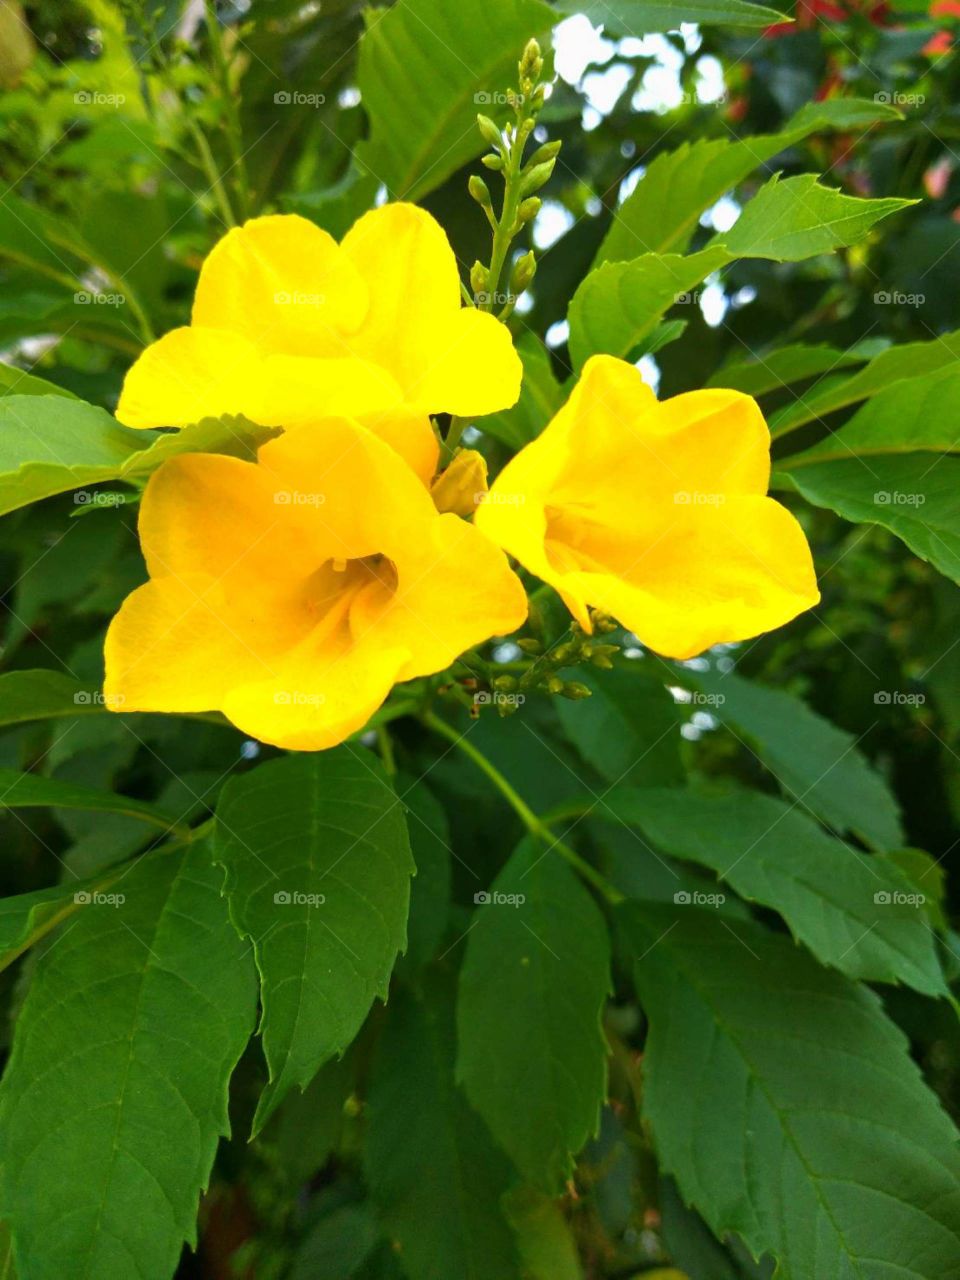 yellow flower in my garden.